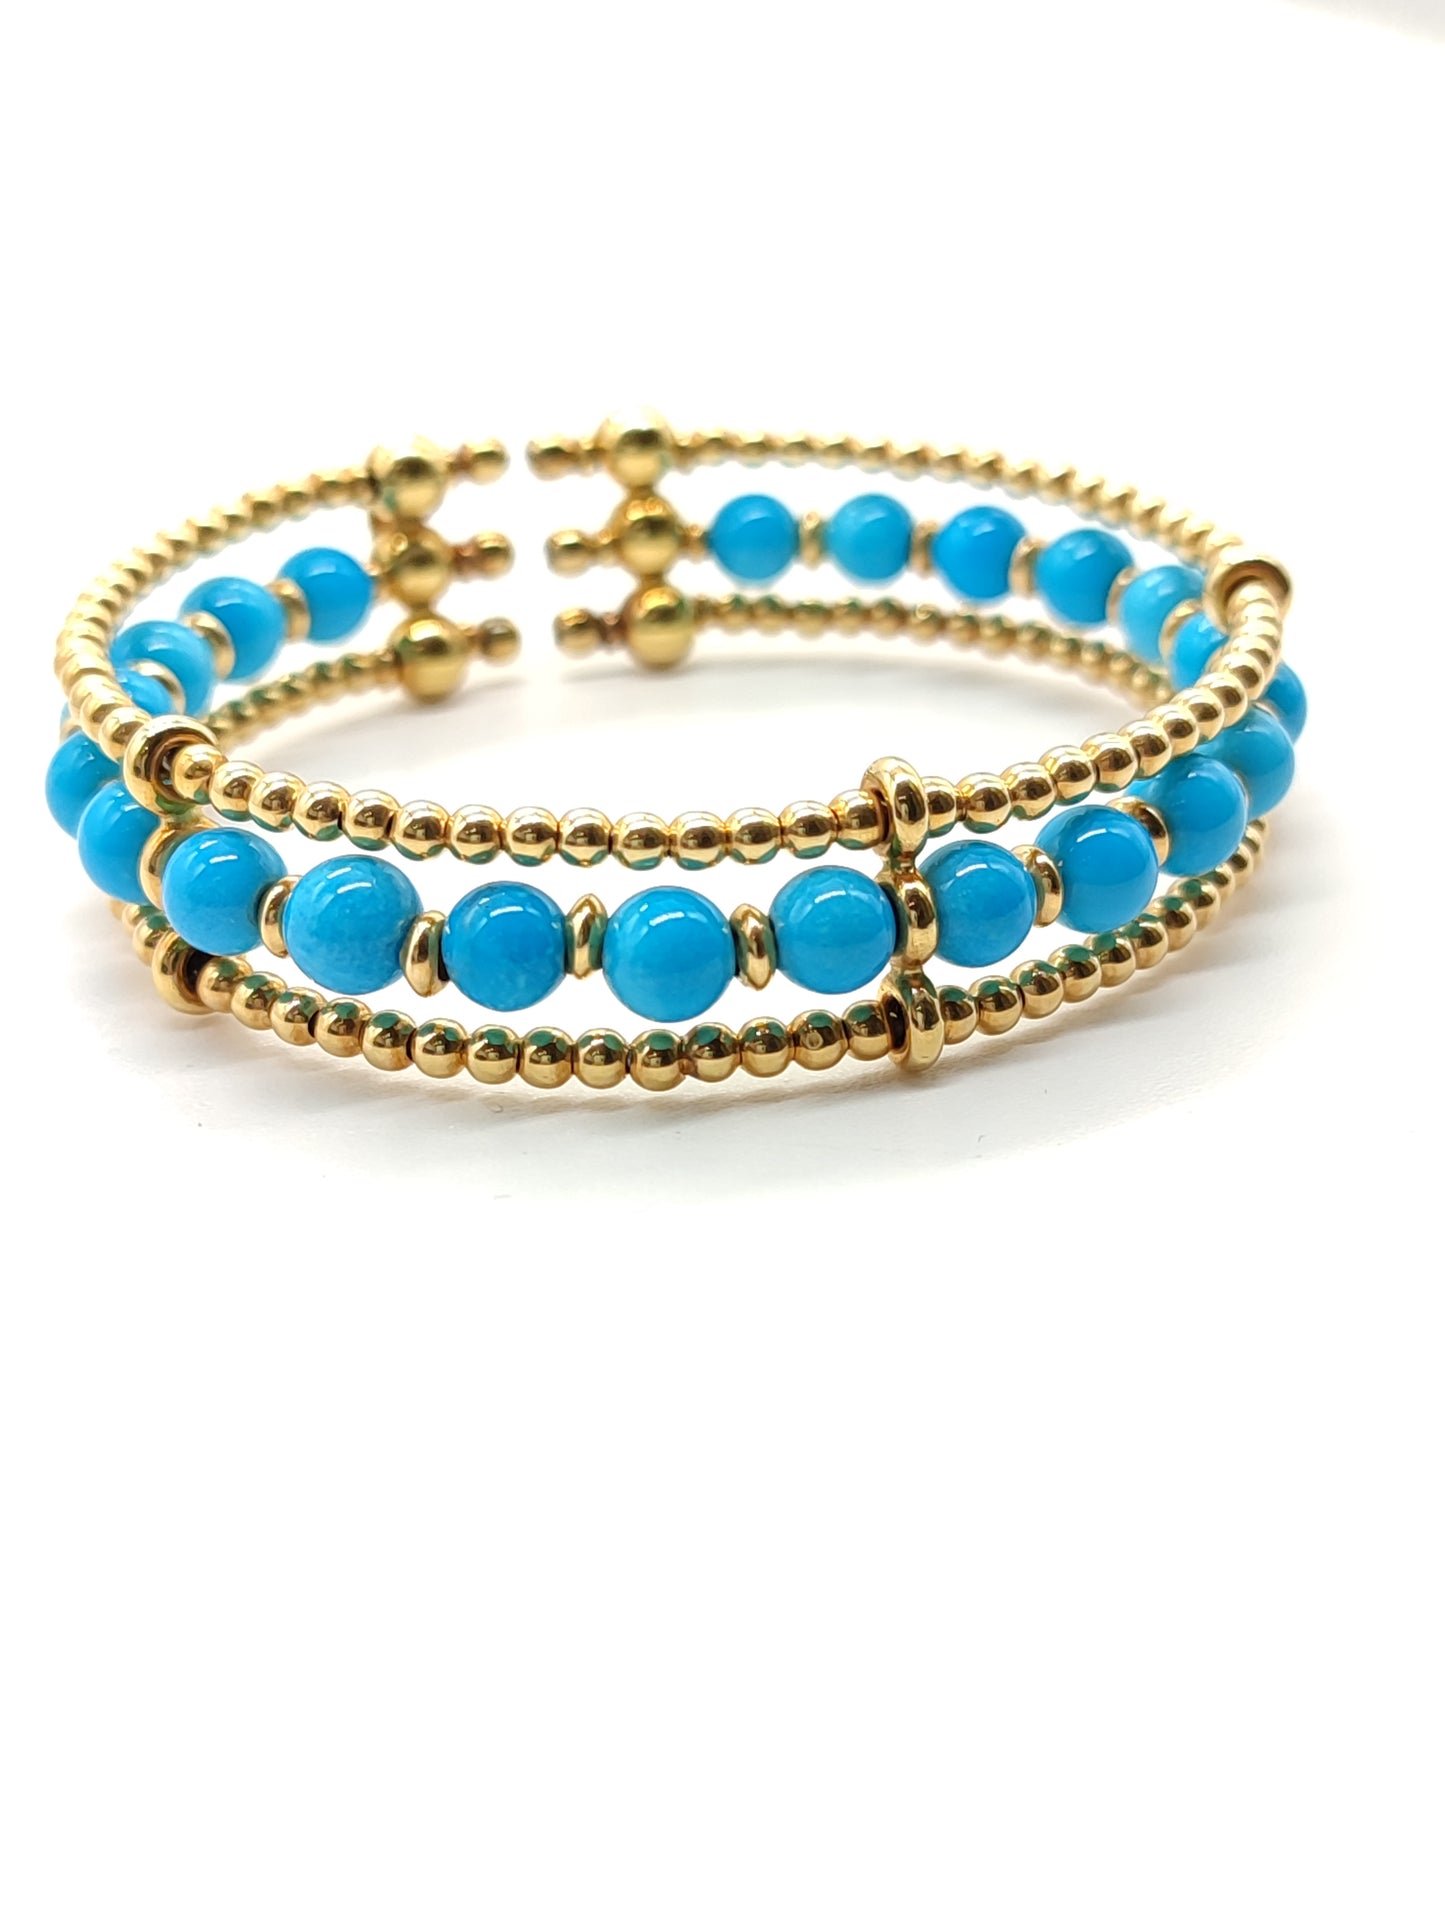 Gold bangle bracelet with turquoises